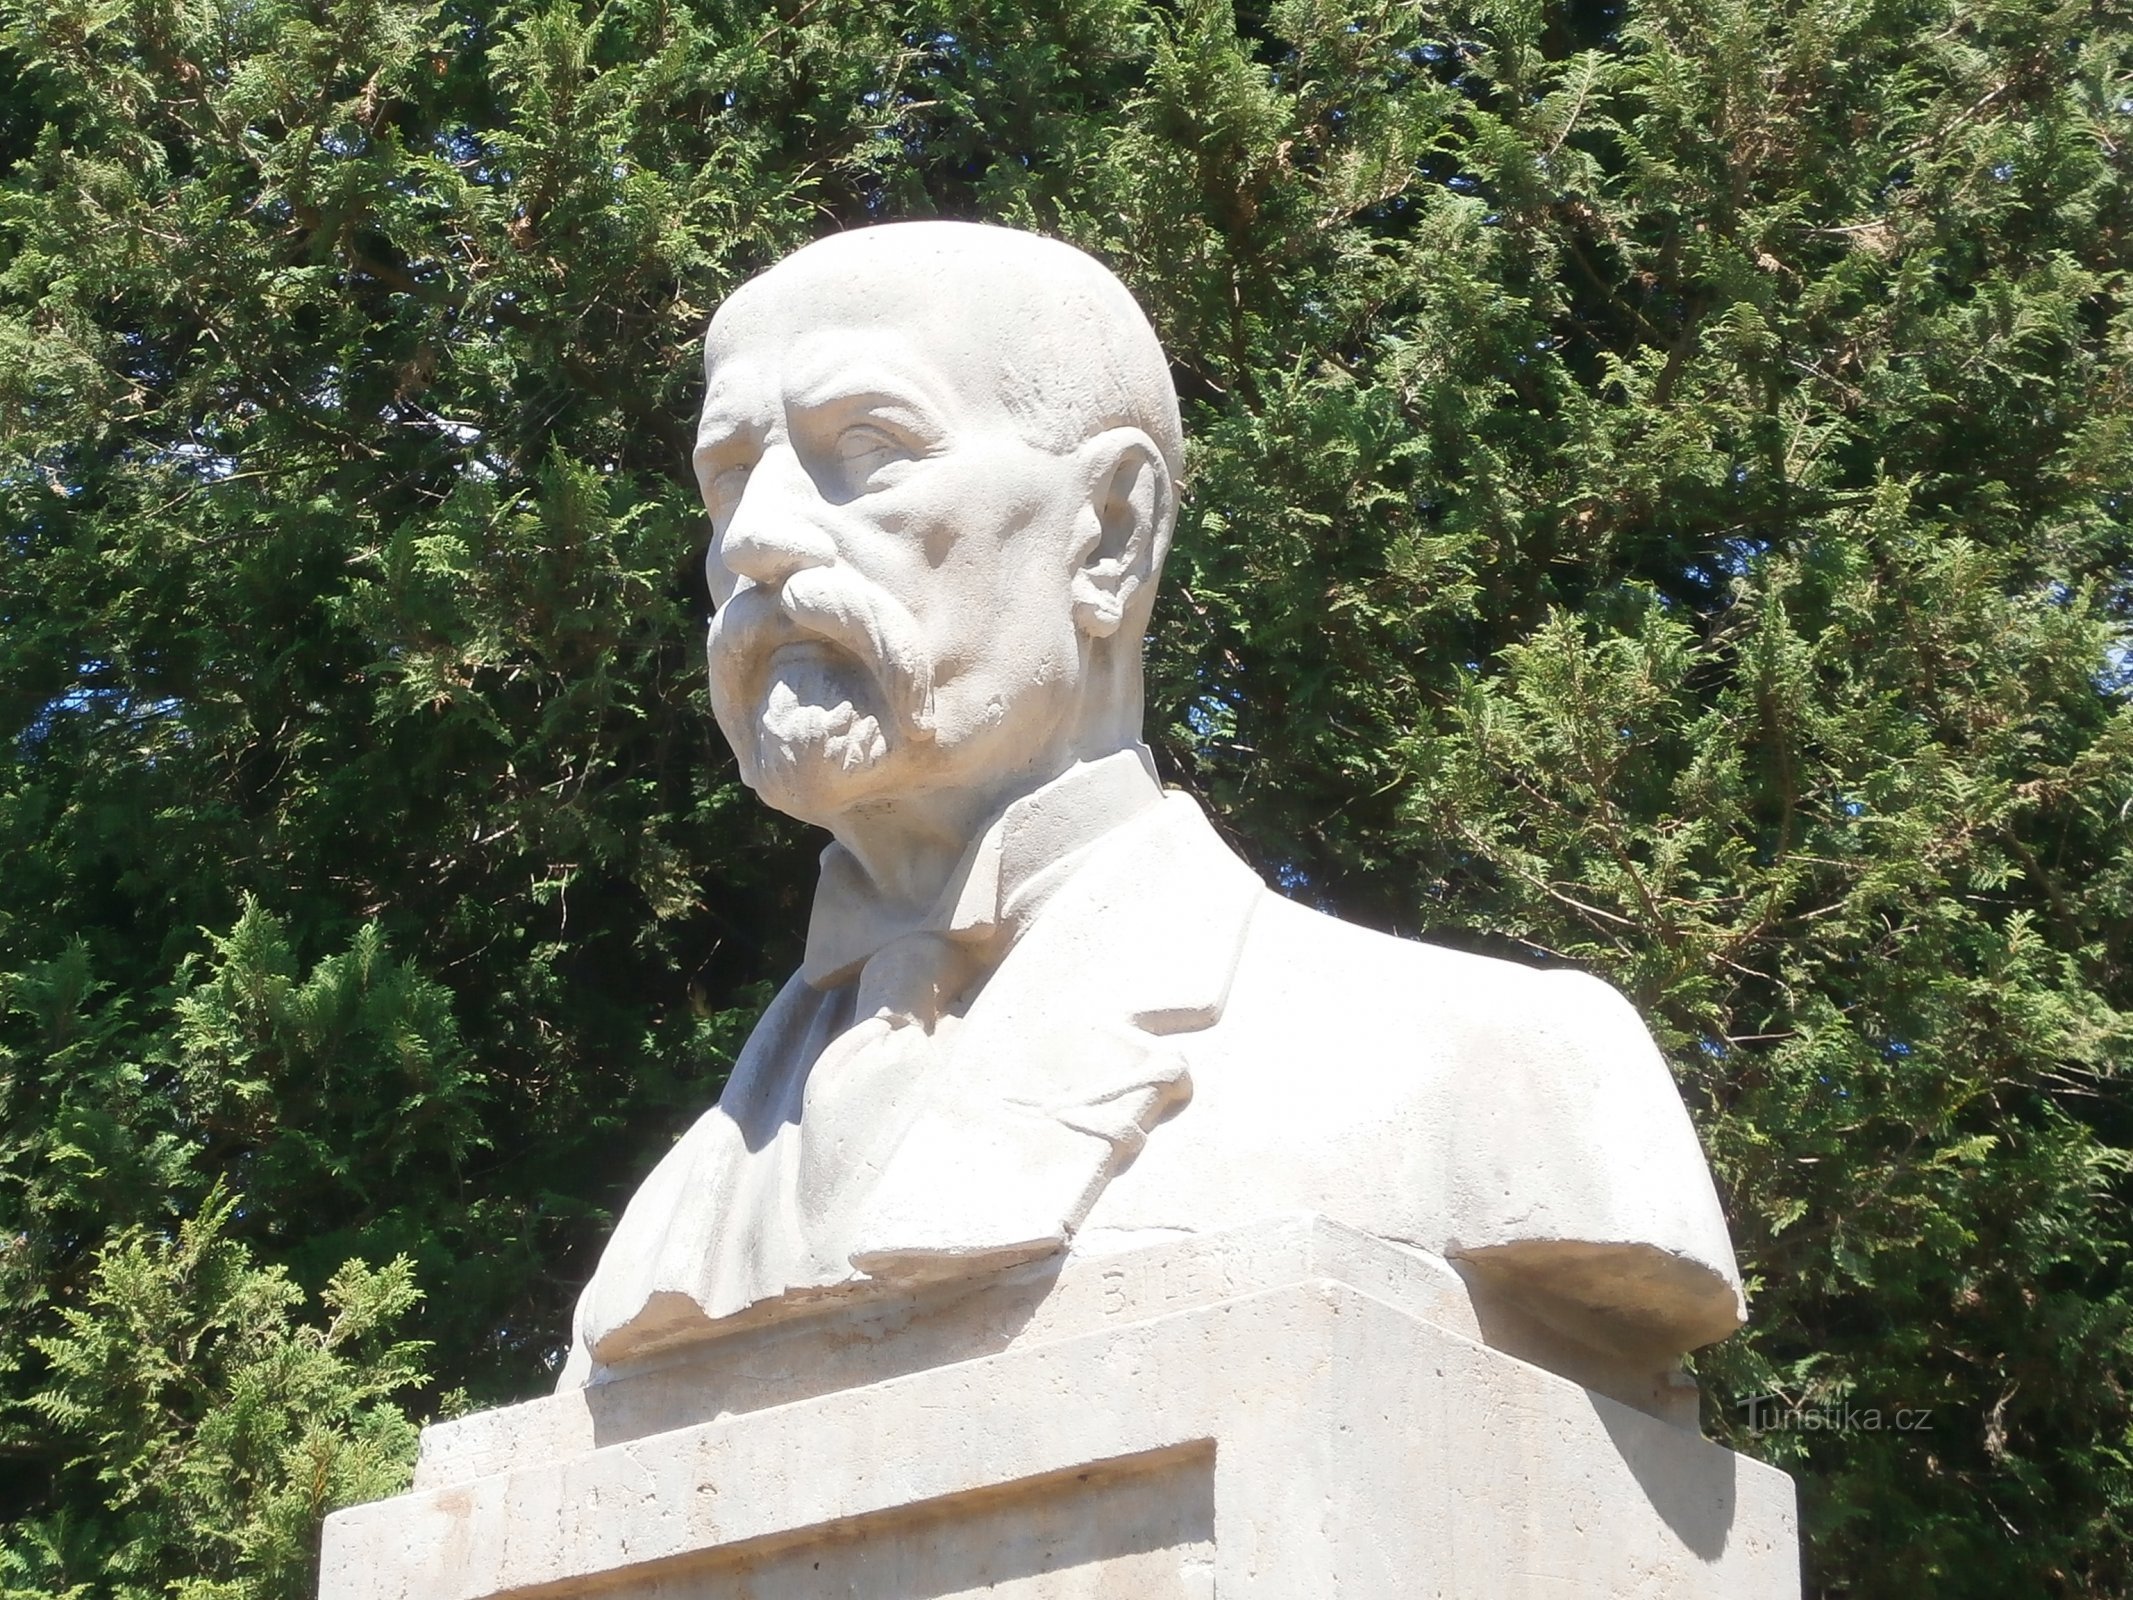 Busto de TG Masaryk en el monumento a los caídos en la Primera Guerra Mundial (Havlovice)